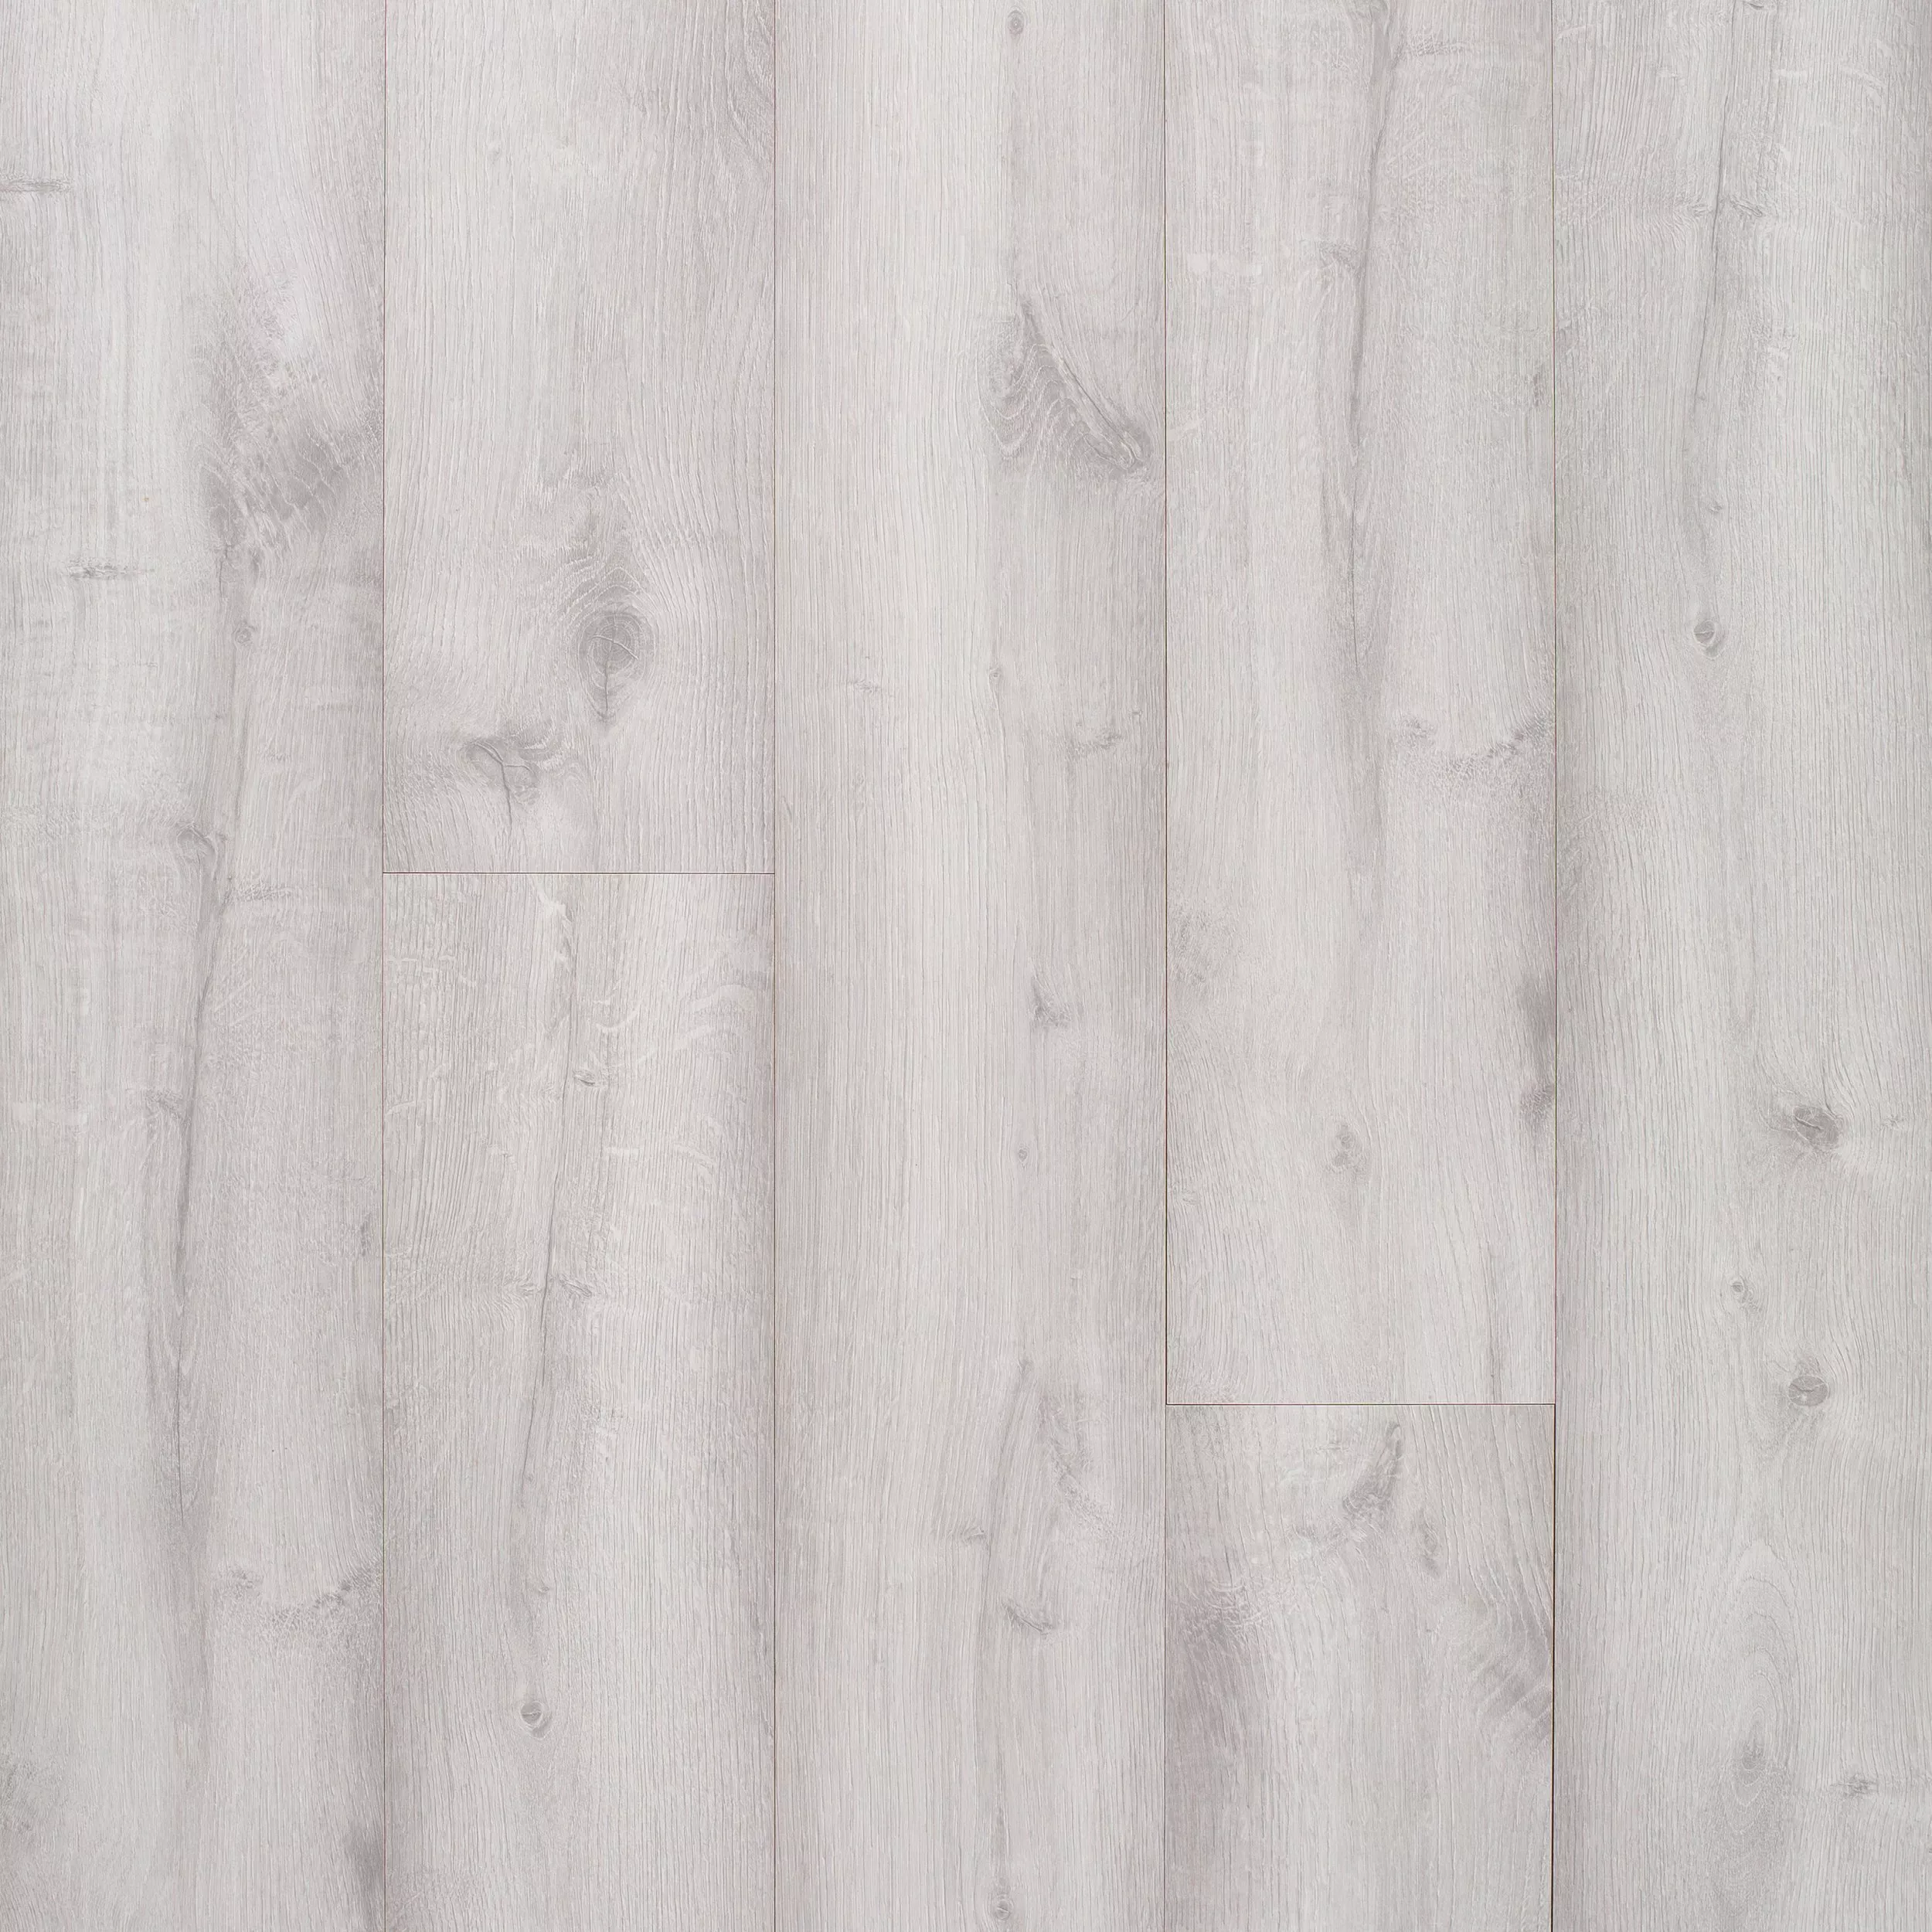 white laminate flooring texture